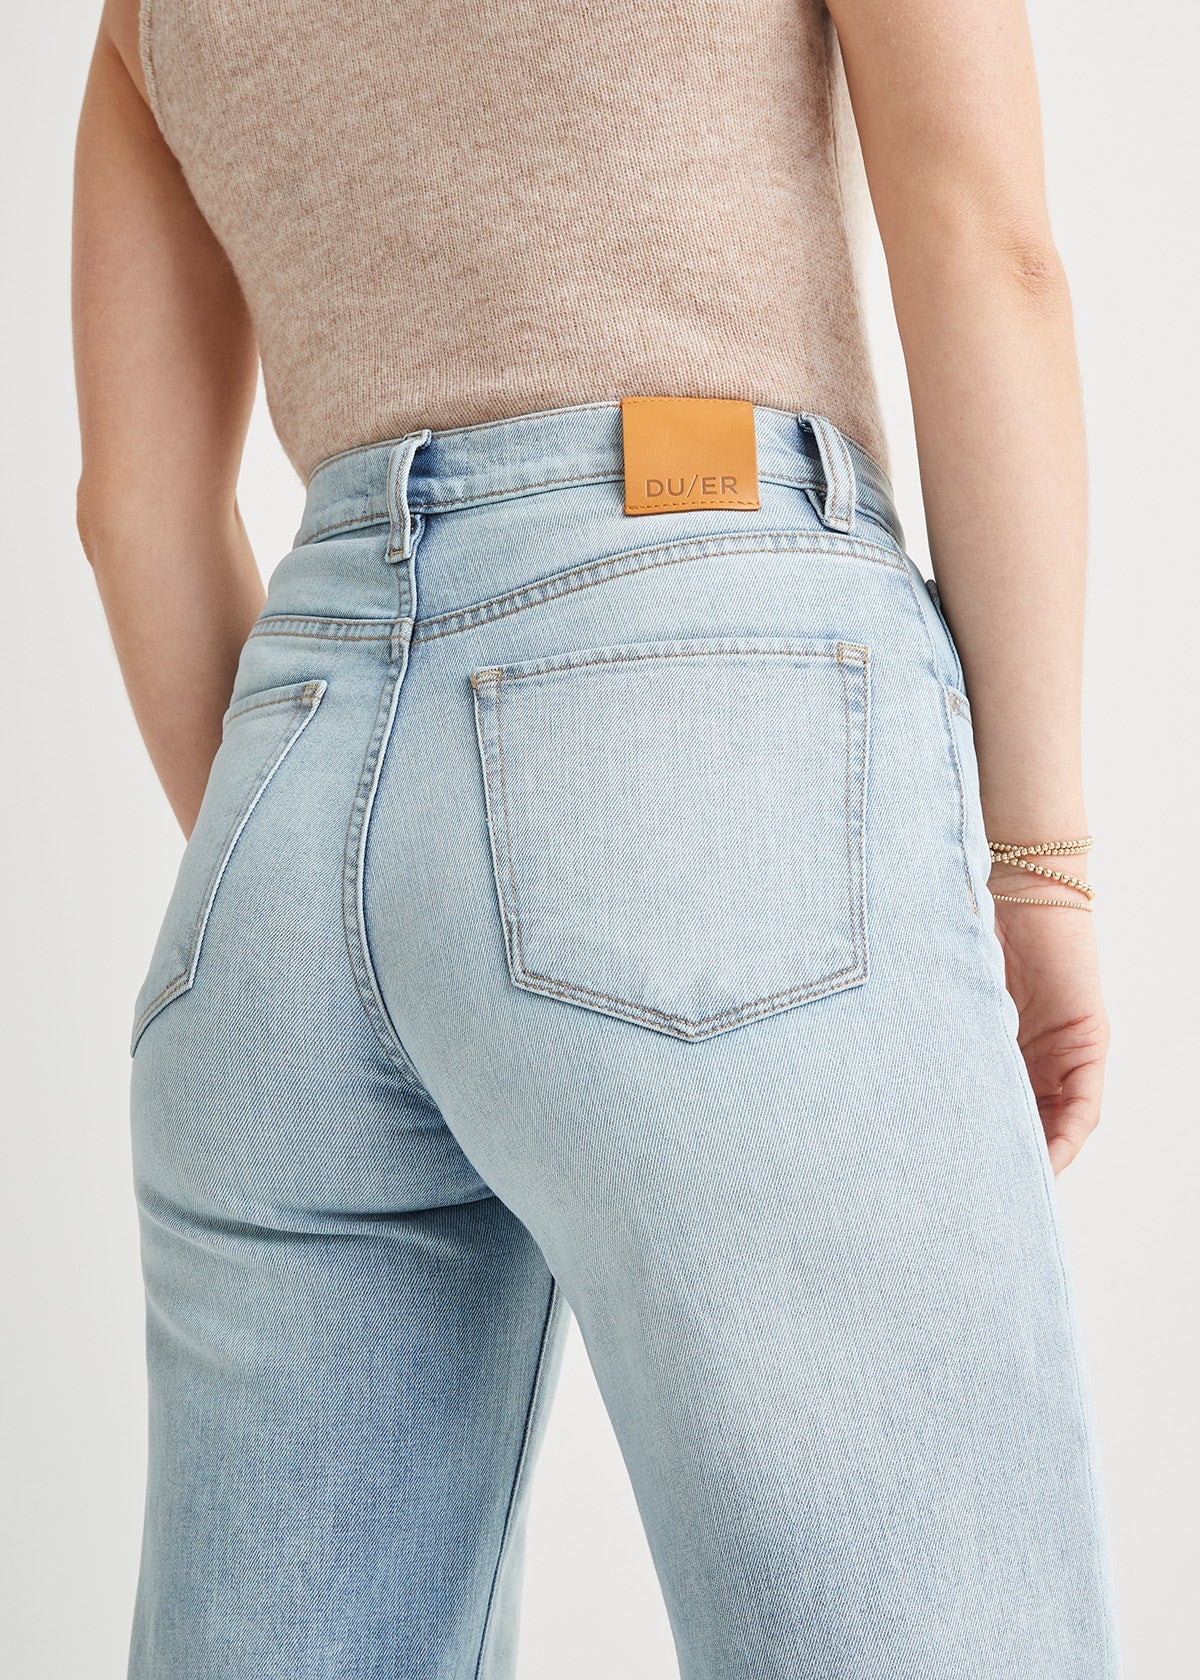 Blue Skinny Jeans for Women | SOUL OF NOMAD Women's Denim Akira Miramar